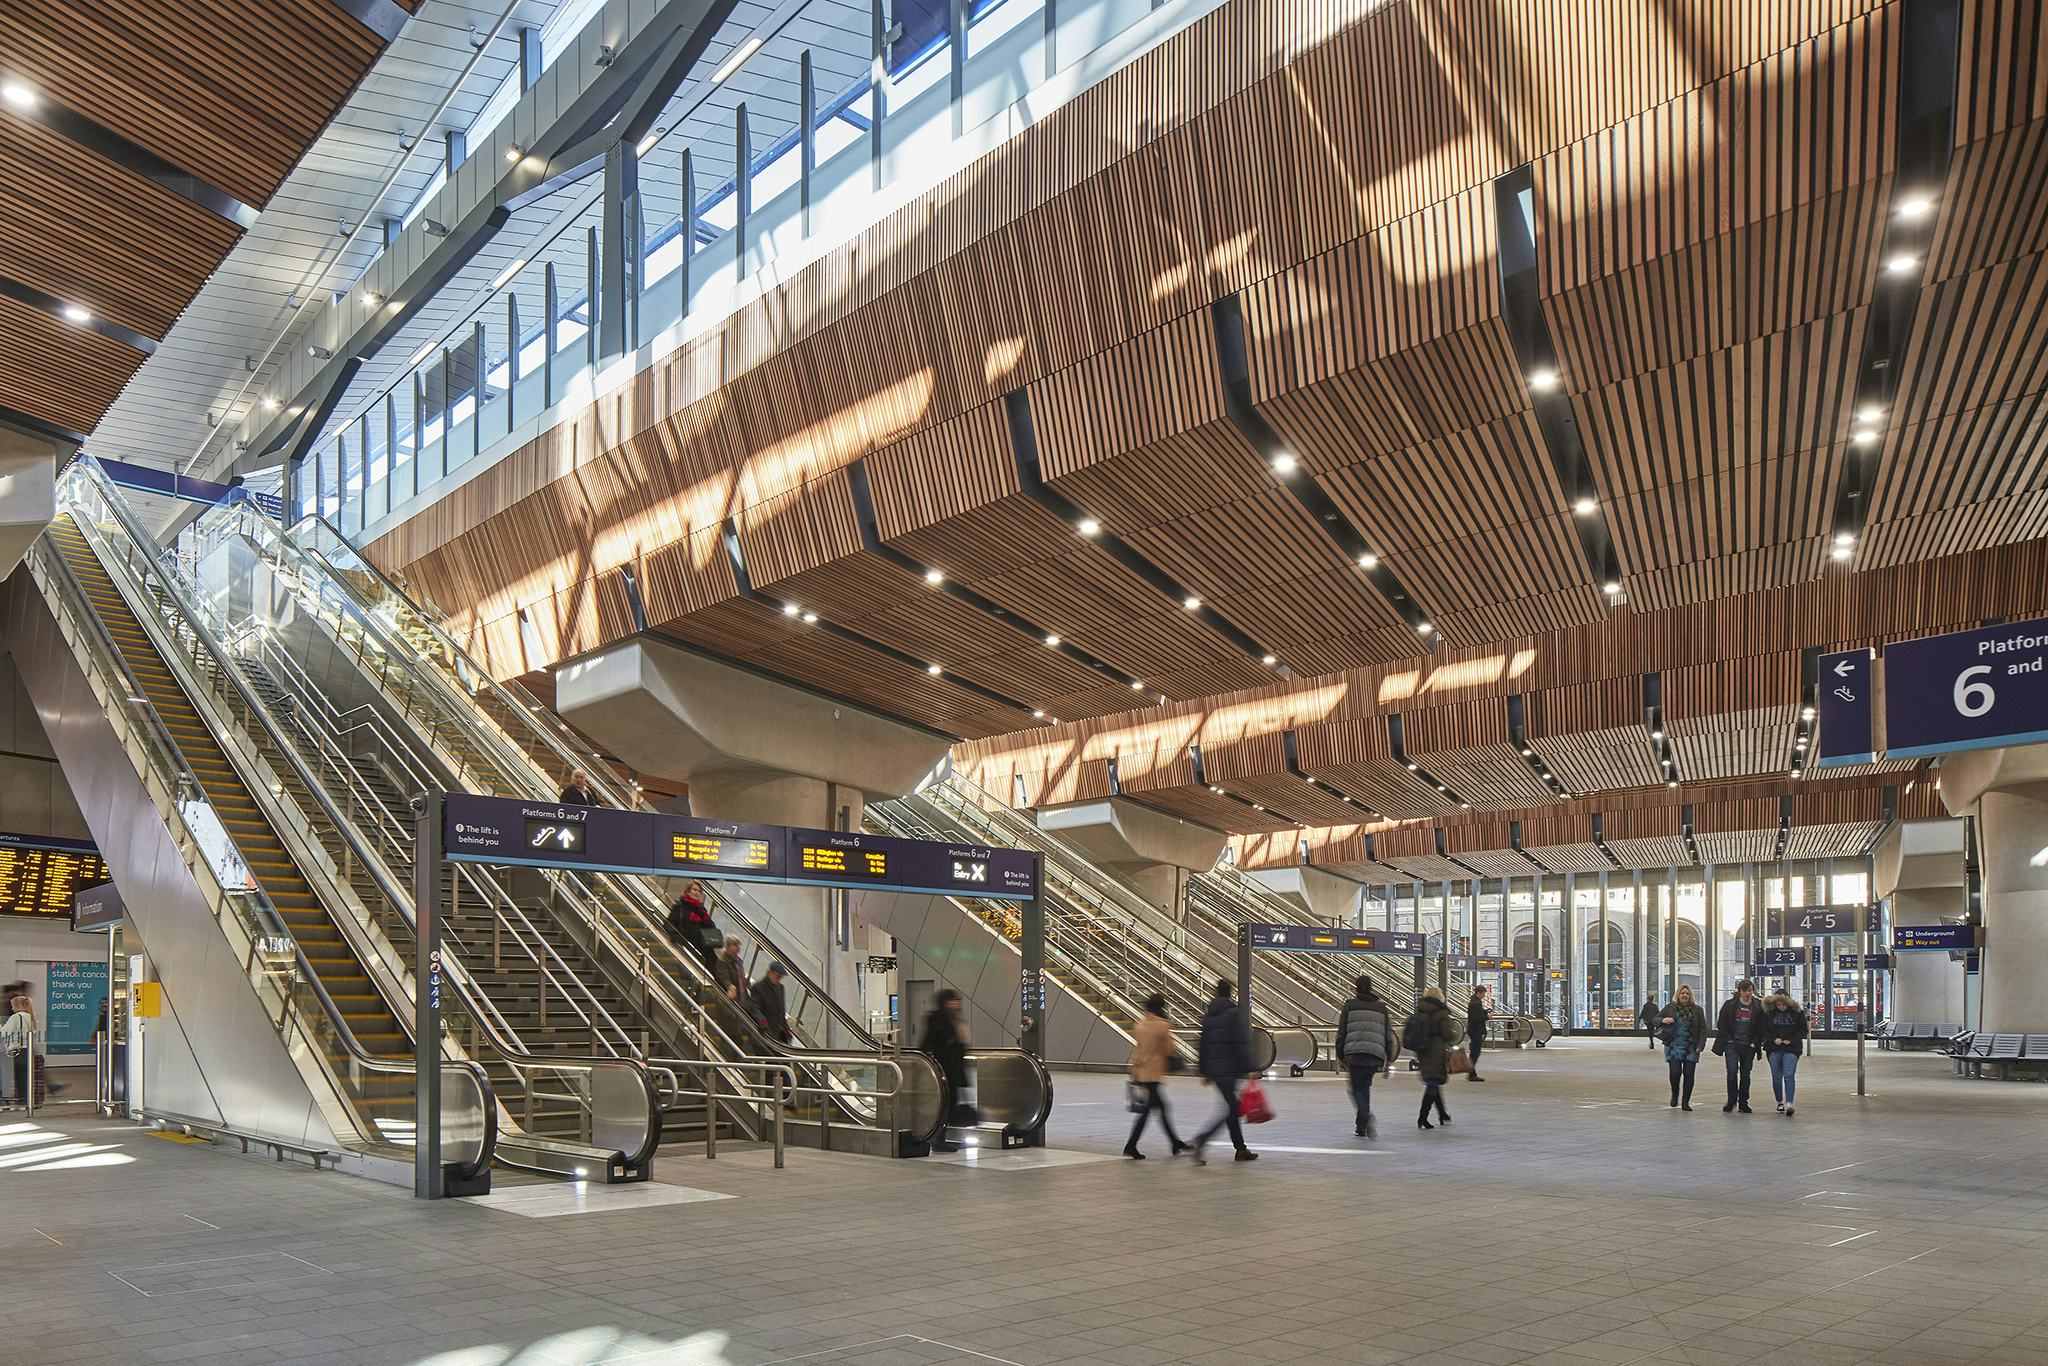 Londen Bridge Station is een van de genomineerden. Beeld Paul Raftery